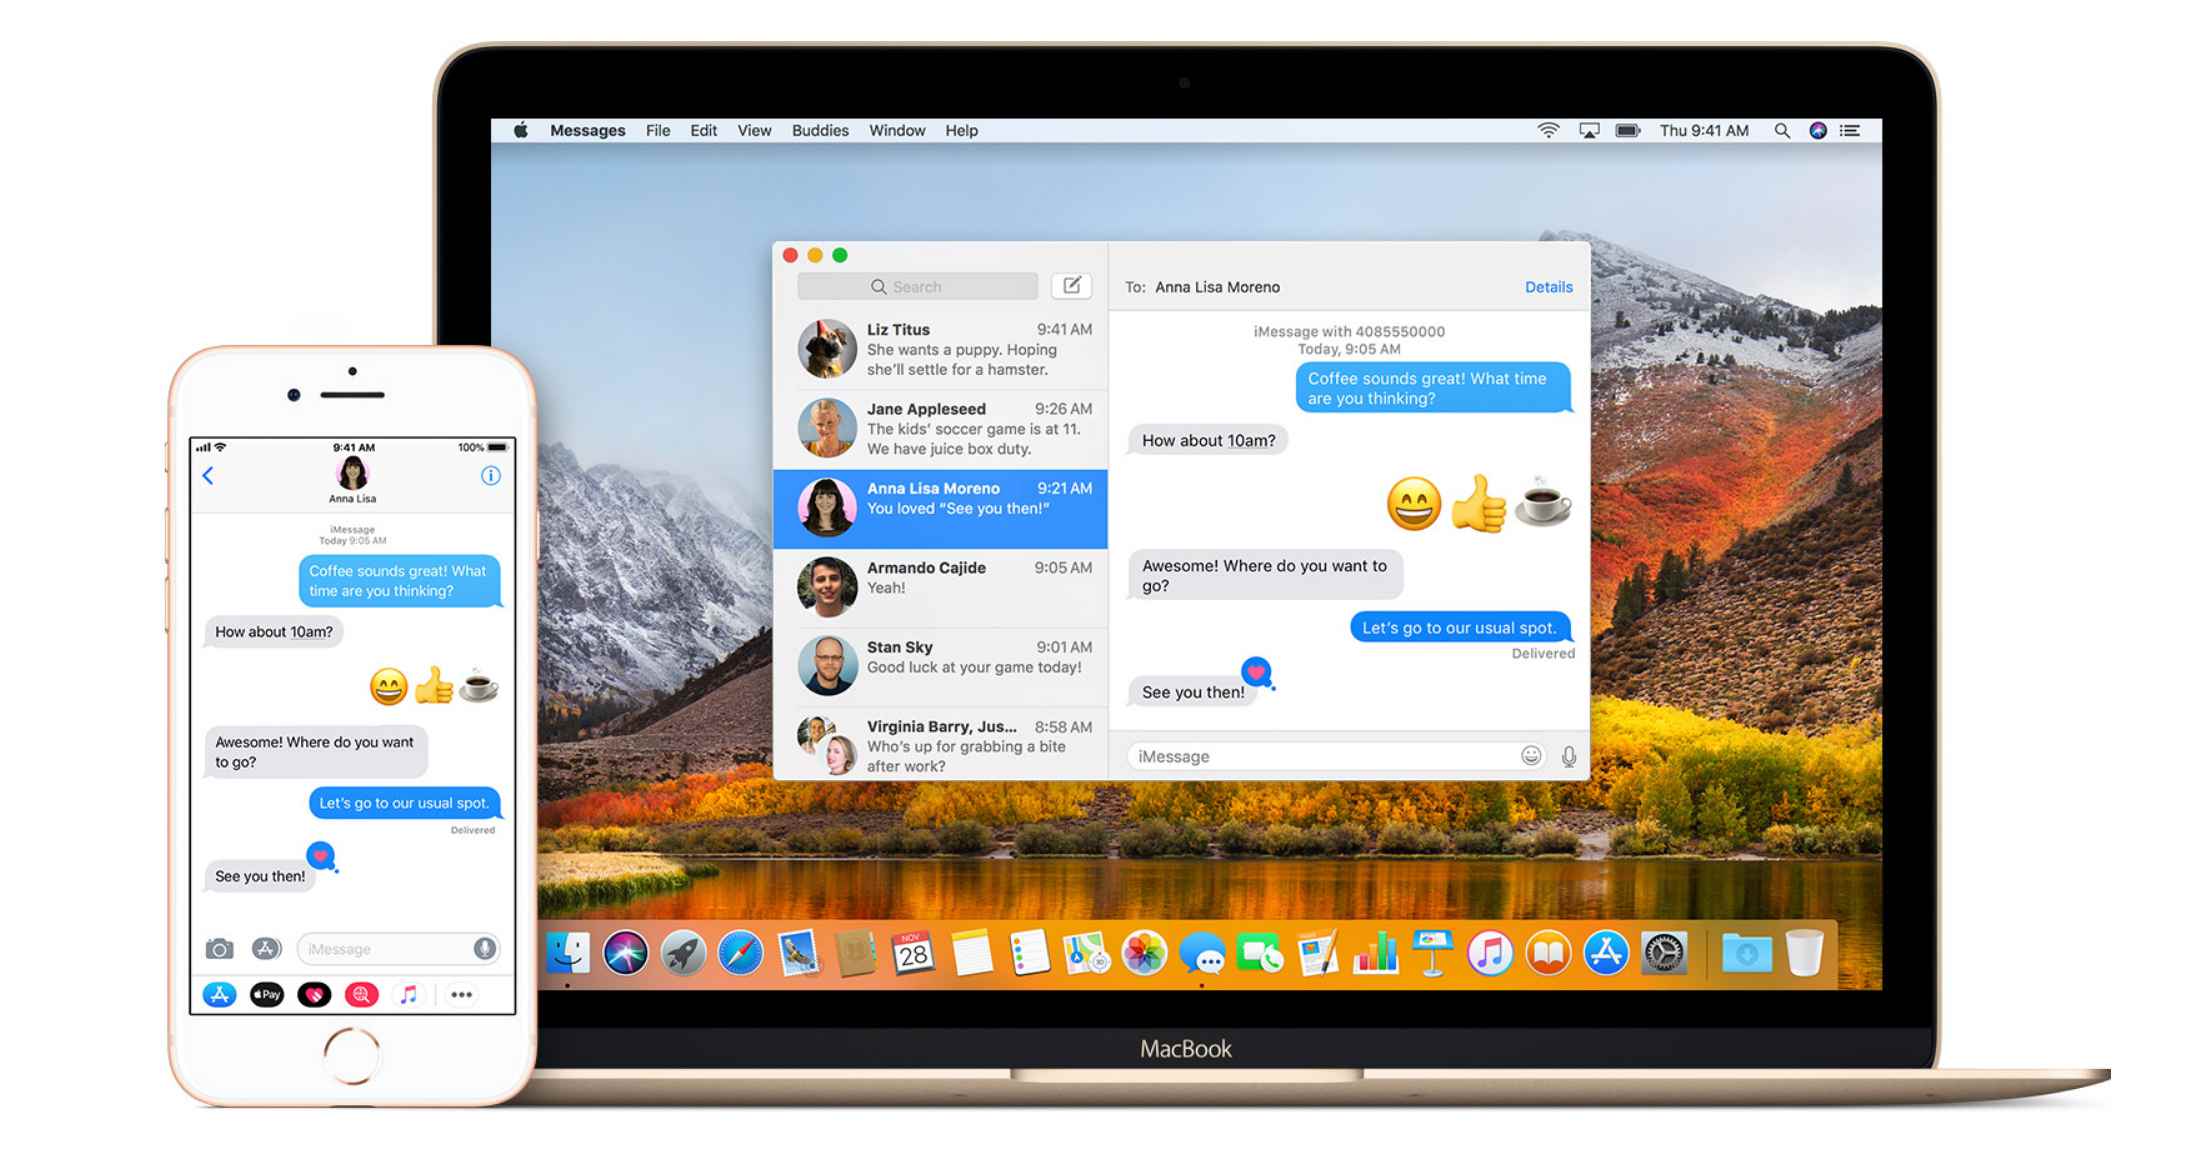 Tela do iPhone e Mac exibindo mensagens da Apple.